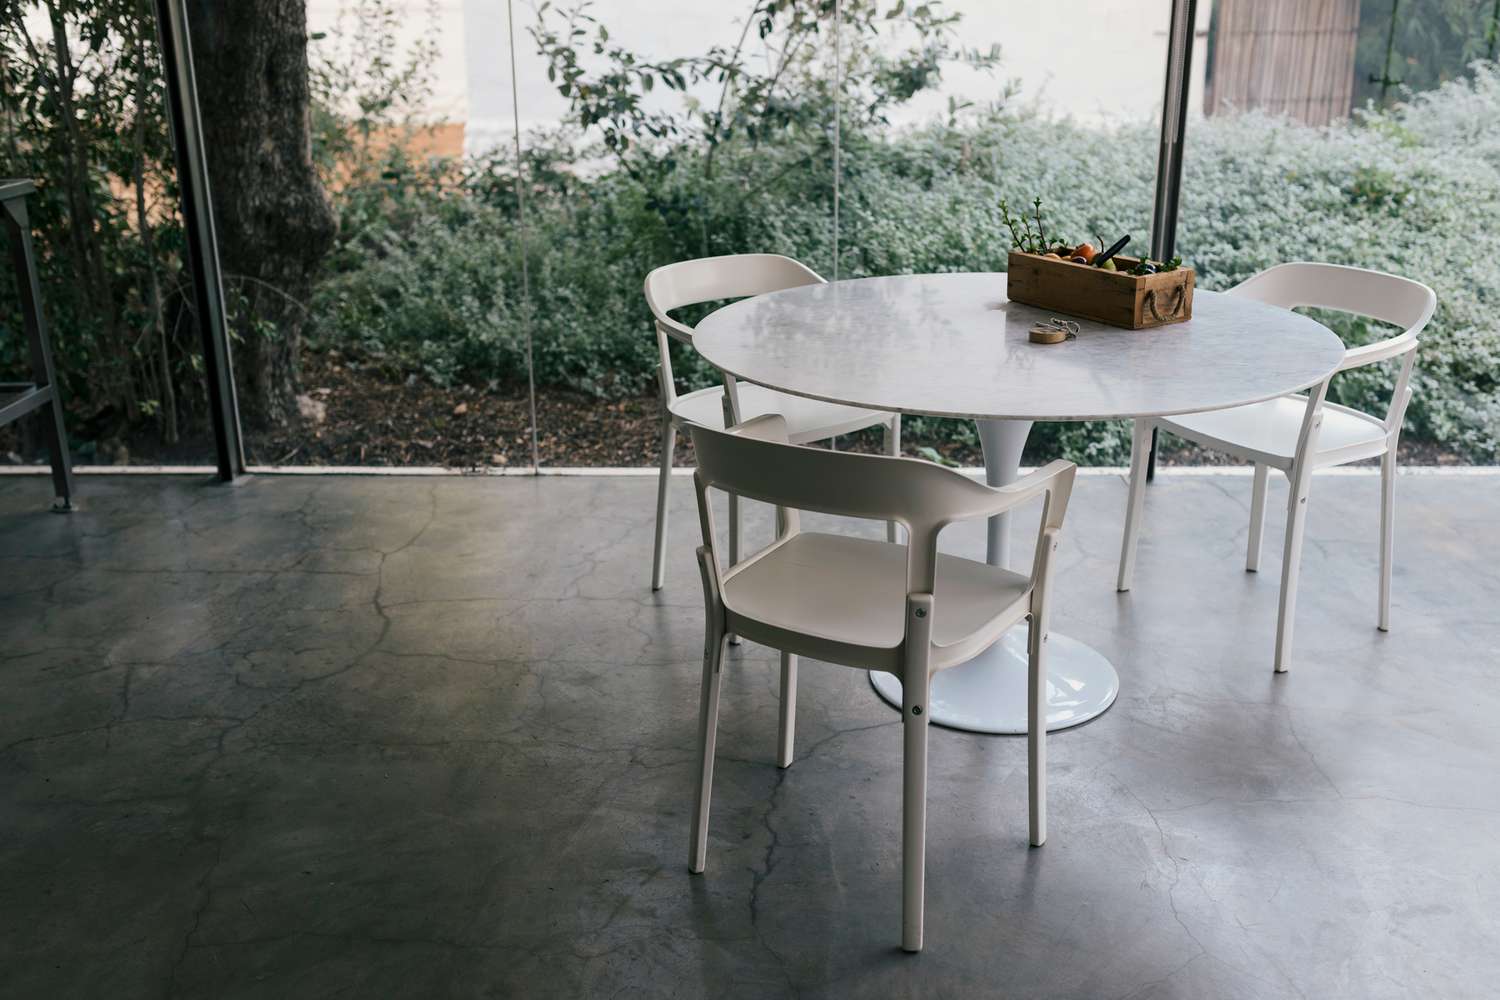 Cocina moderna de cristal de granja con tres sillas y mesa de plástico sobre suelo de hormigón